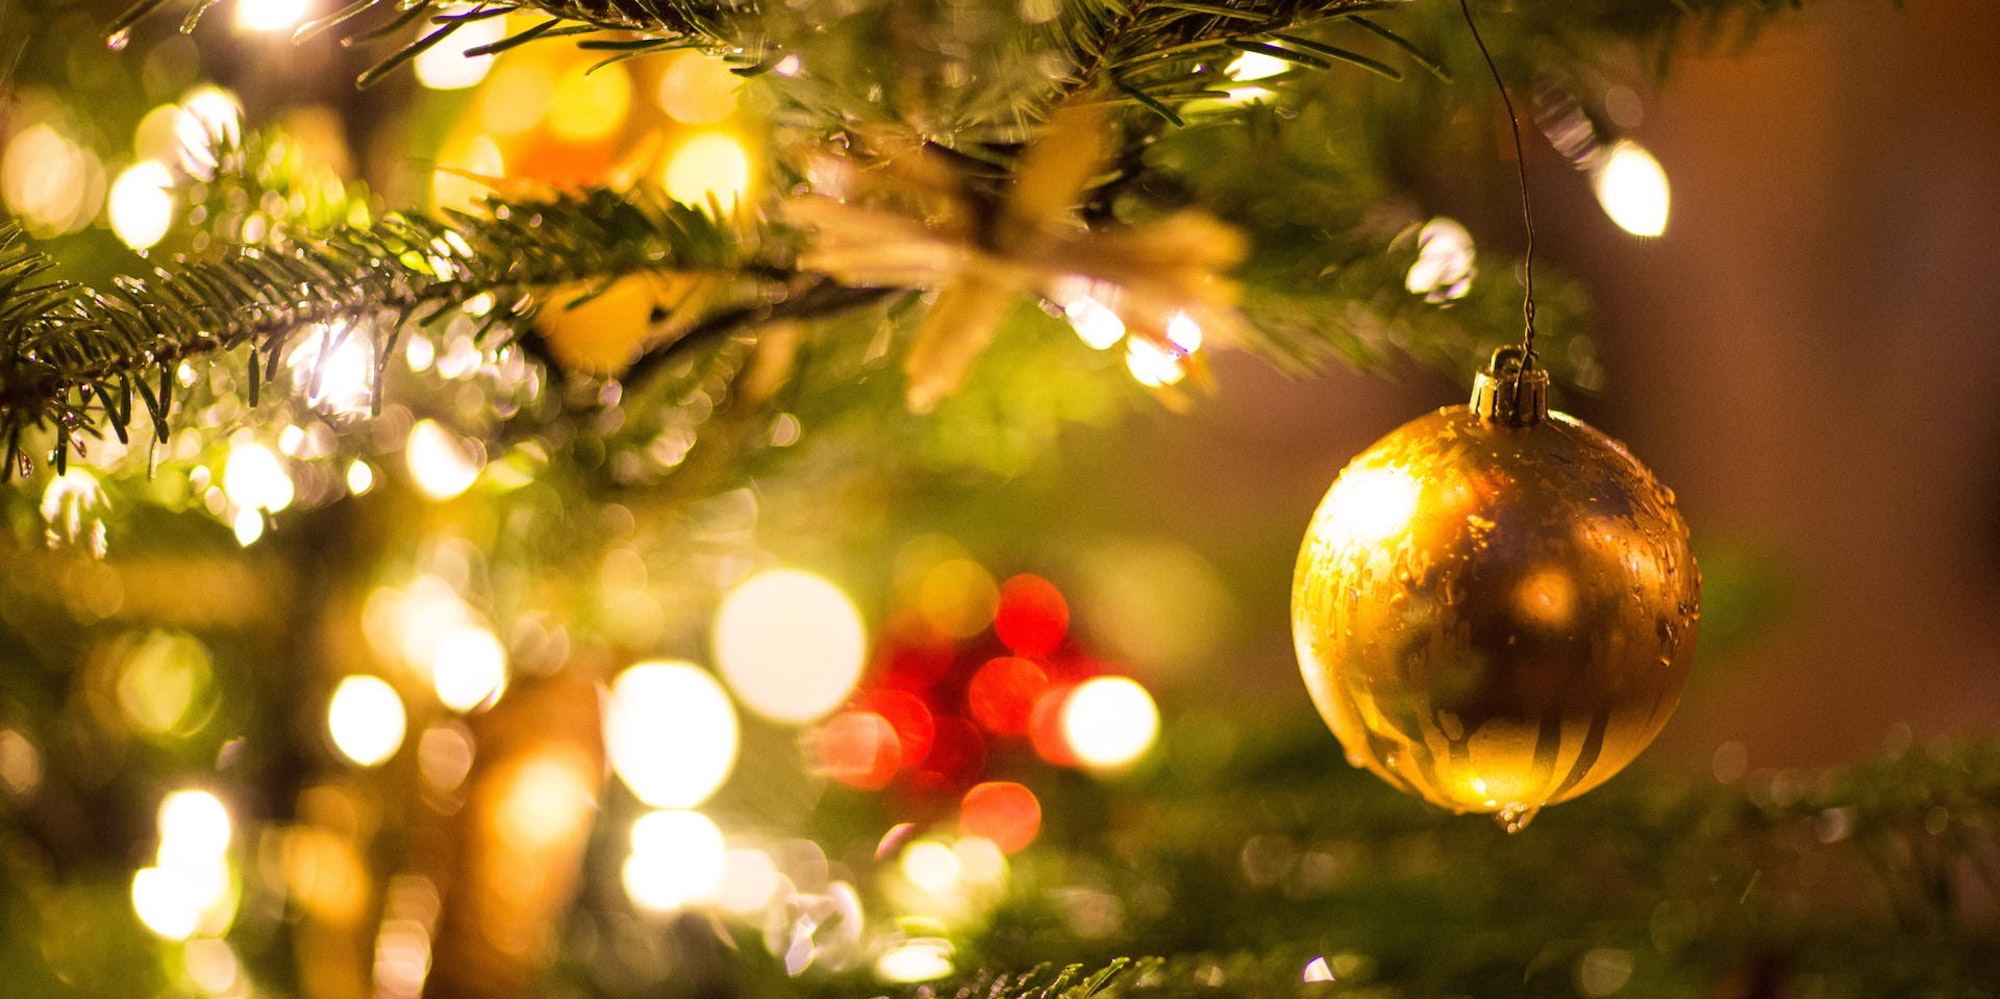 An Ästen eines Weihnachtsbaums hängt eine goldene Kugel, eine Lichterkette erhellt das Bild.